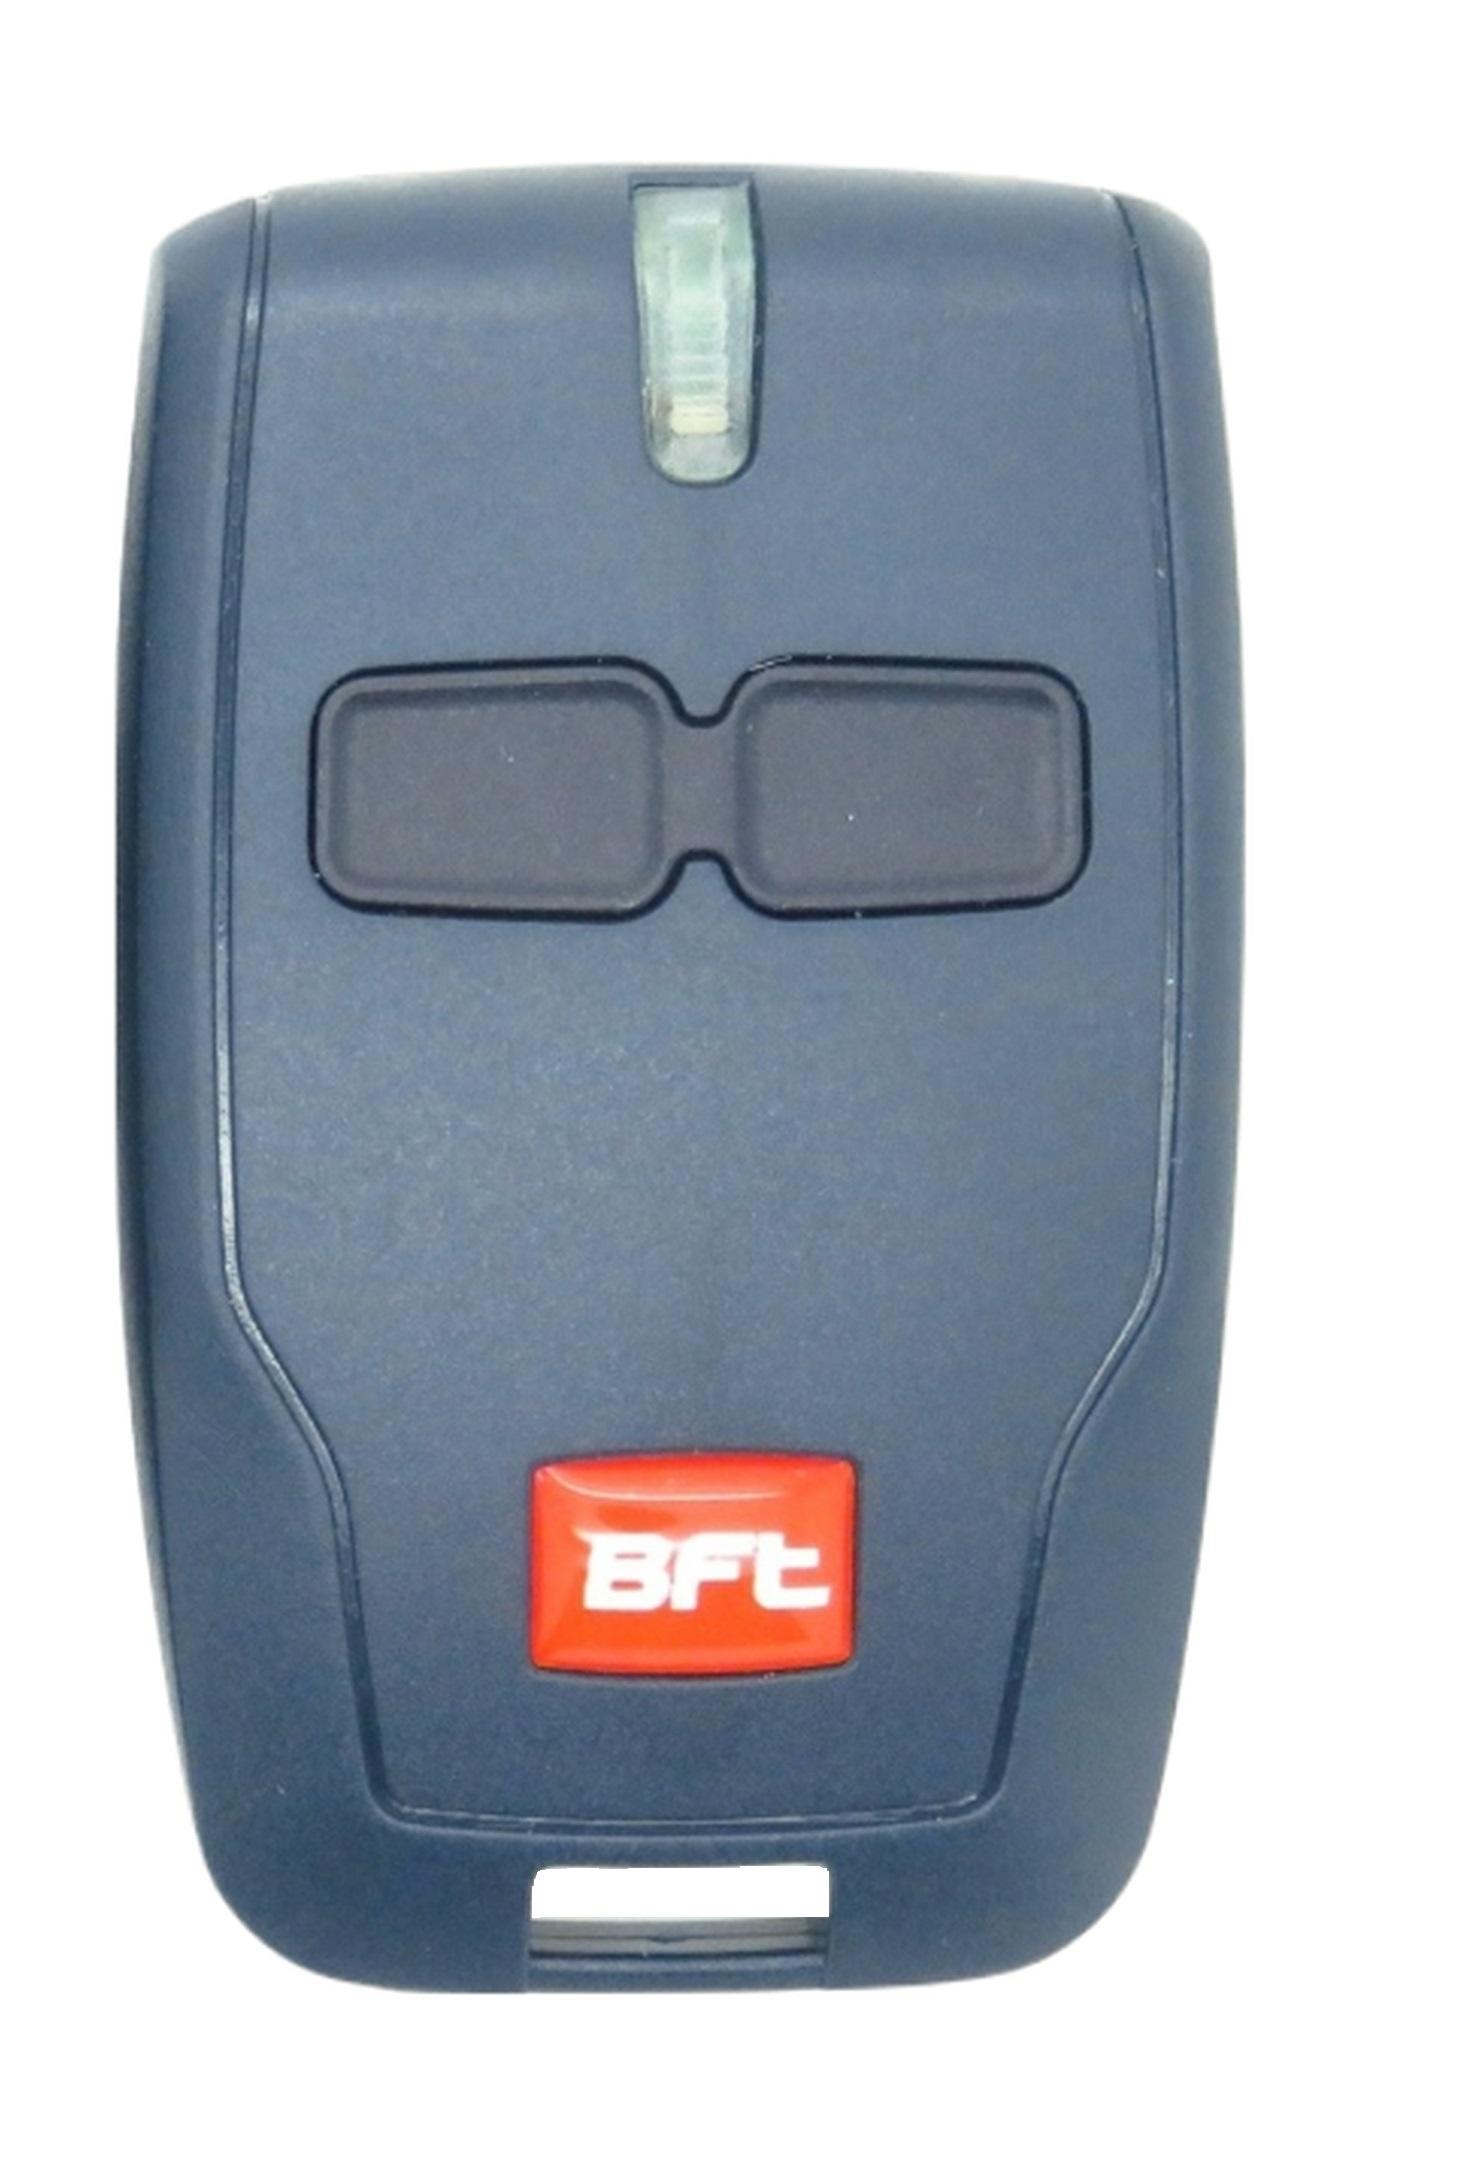 10X BFT MITTO 2 B2 Remote Control BFT MITTO 433MHz 2 button Remote Fast UK Stock 